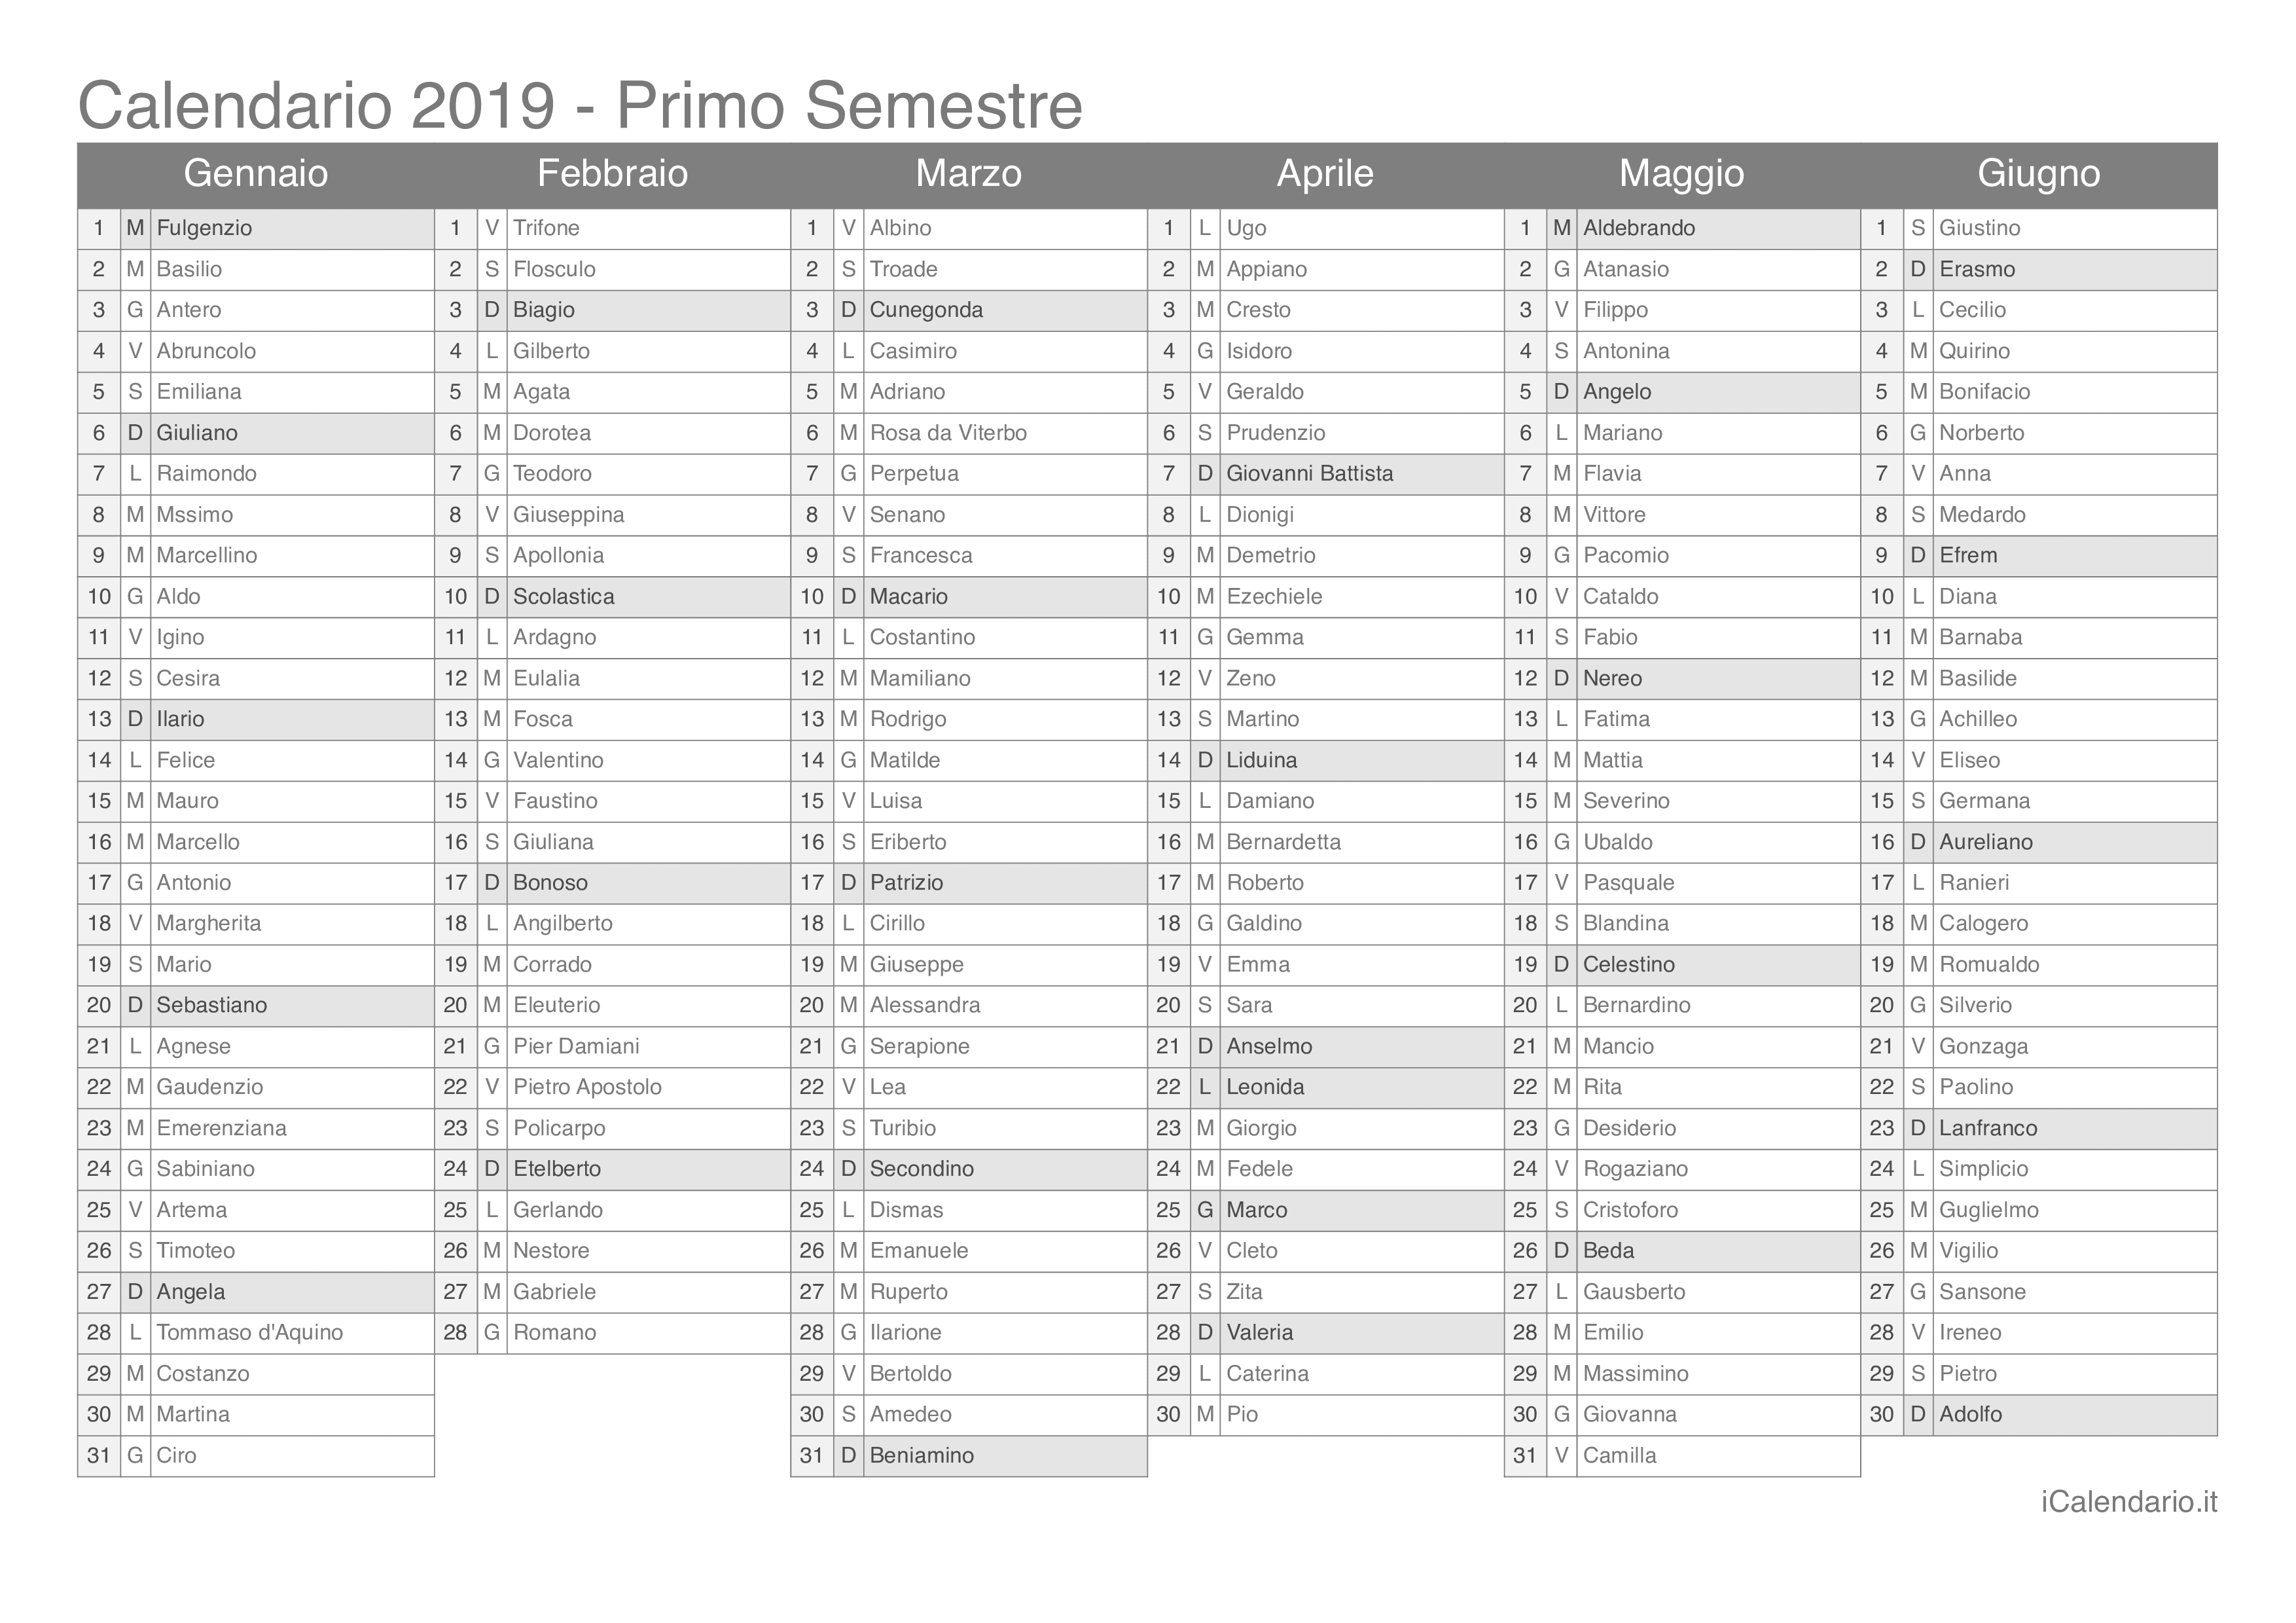 Calendario semestrale 2019 con santi e festivi